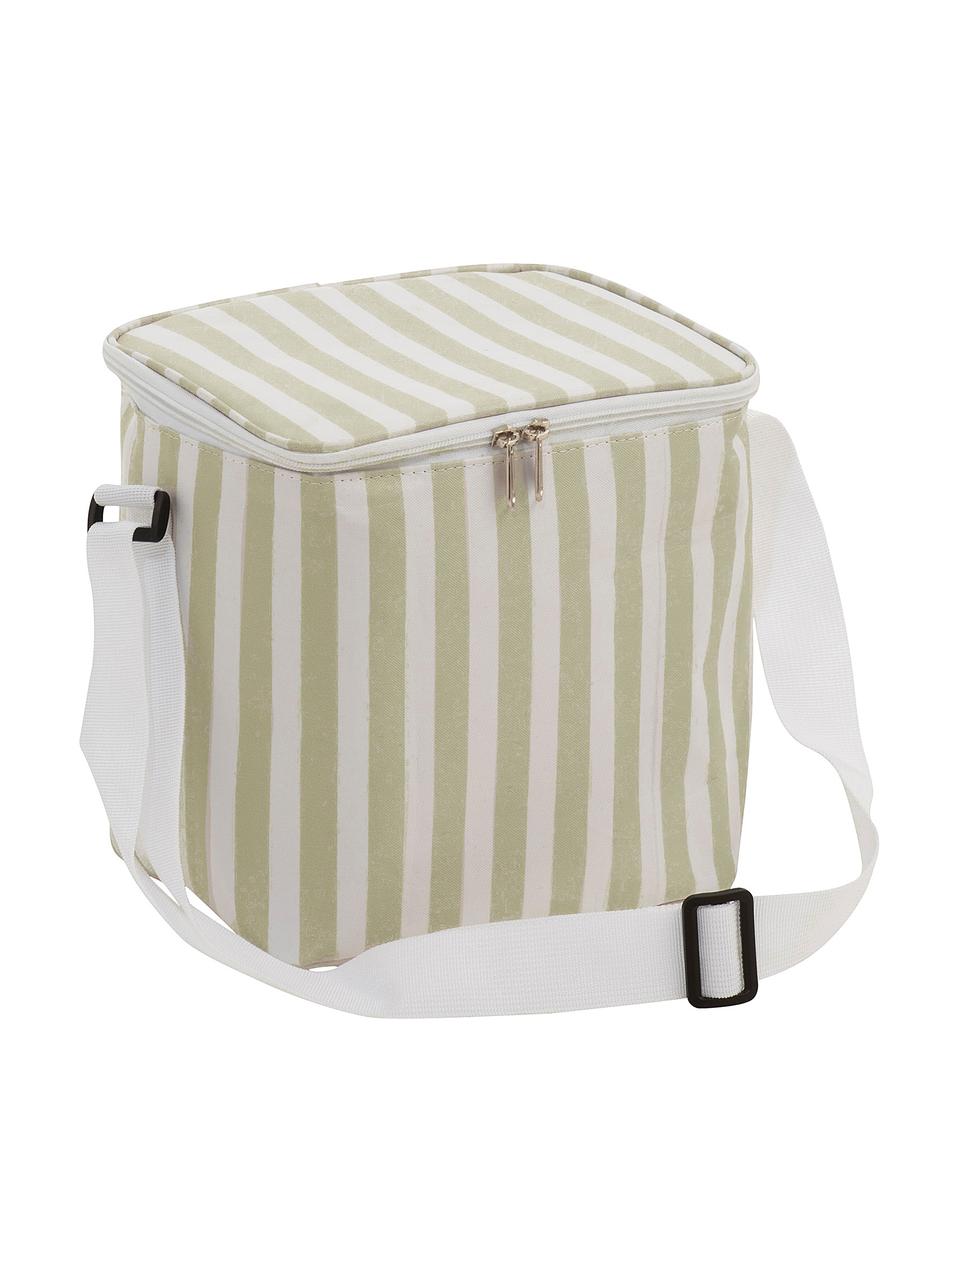 Picknick-Kühltasche Clair, Bezug: Polyester, Beige, gebrochenes Weiß, B 25 x H 24 cm